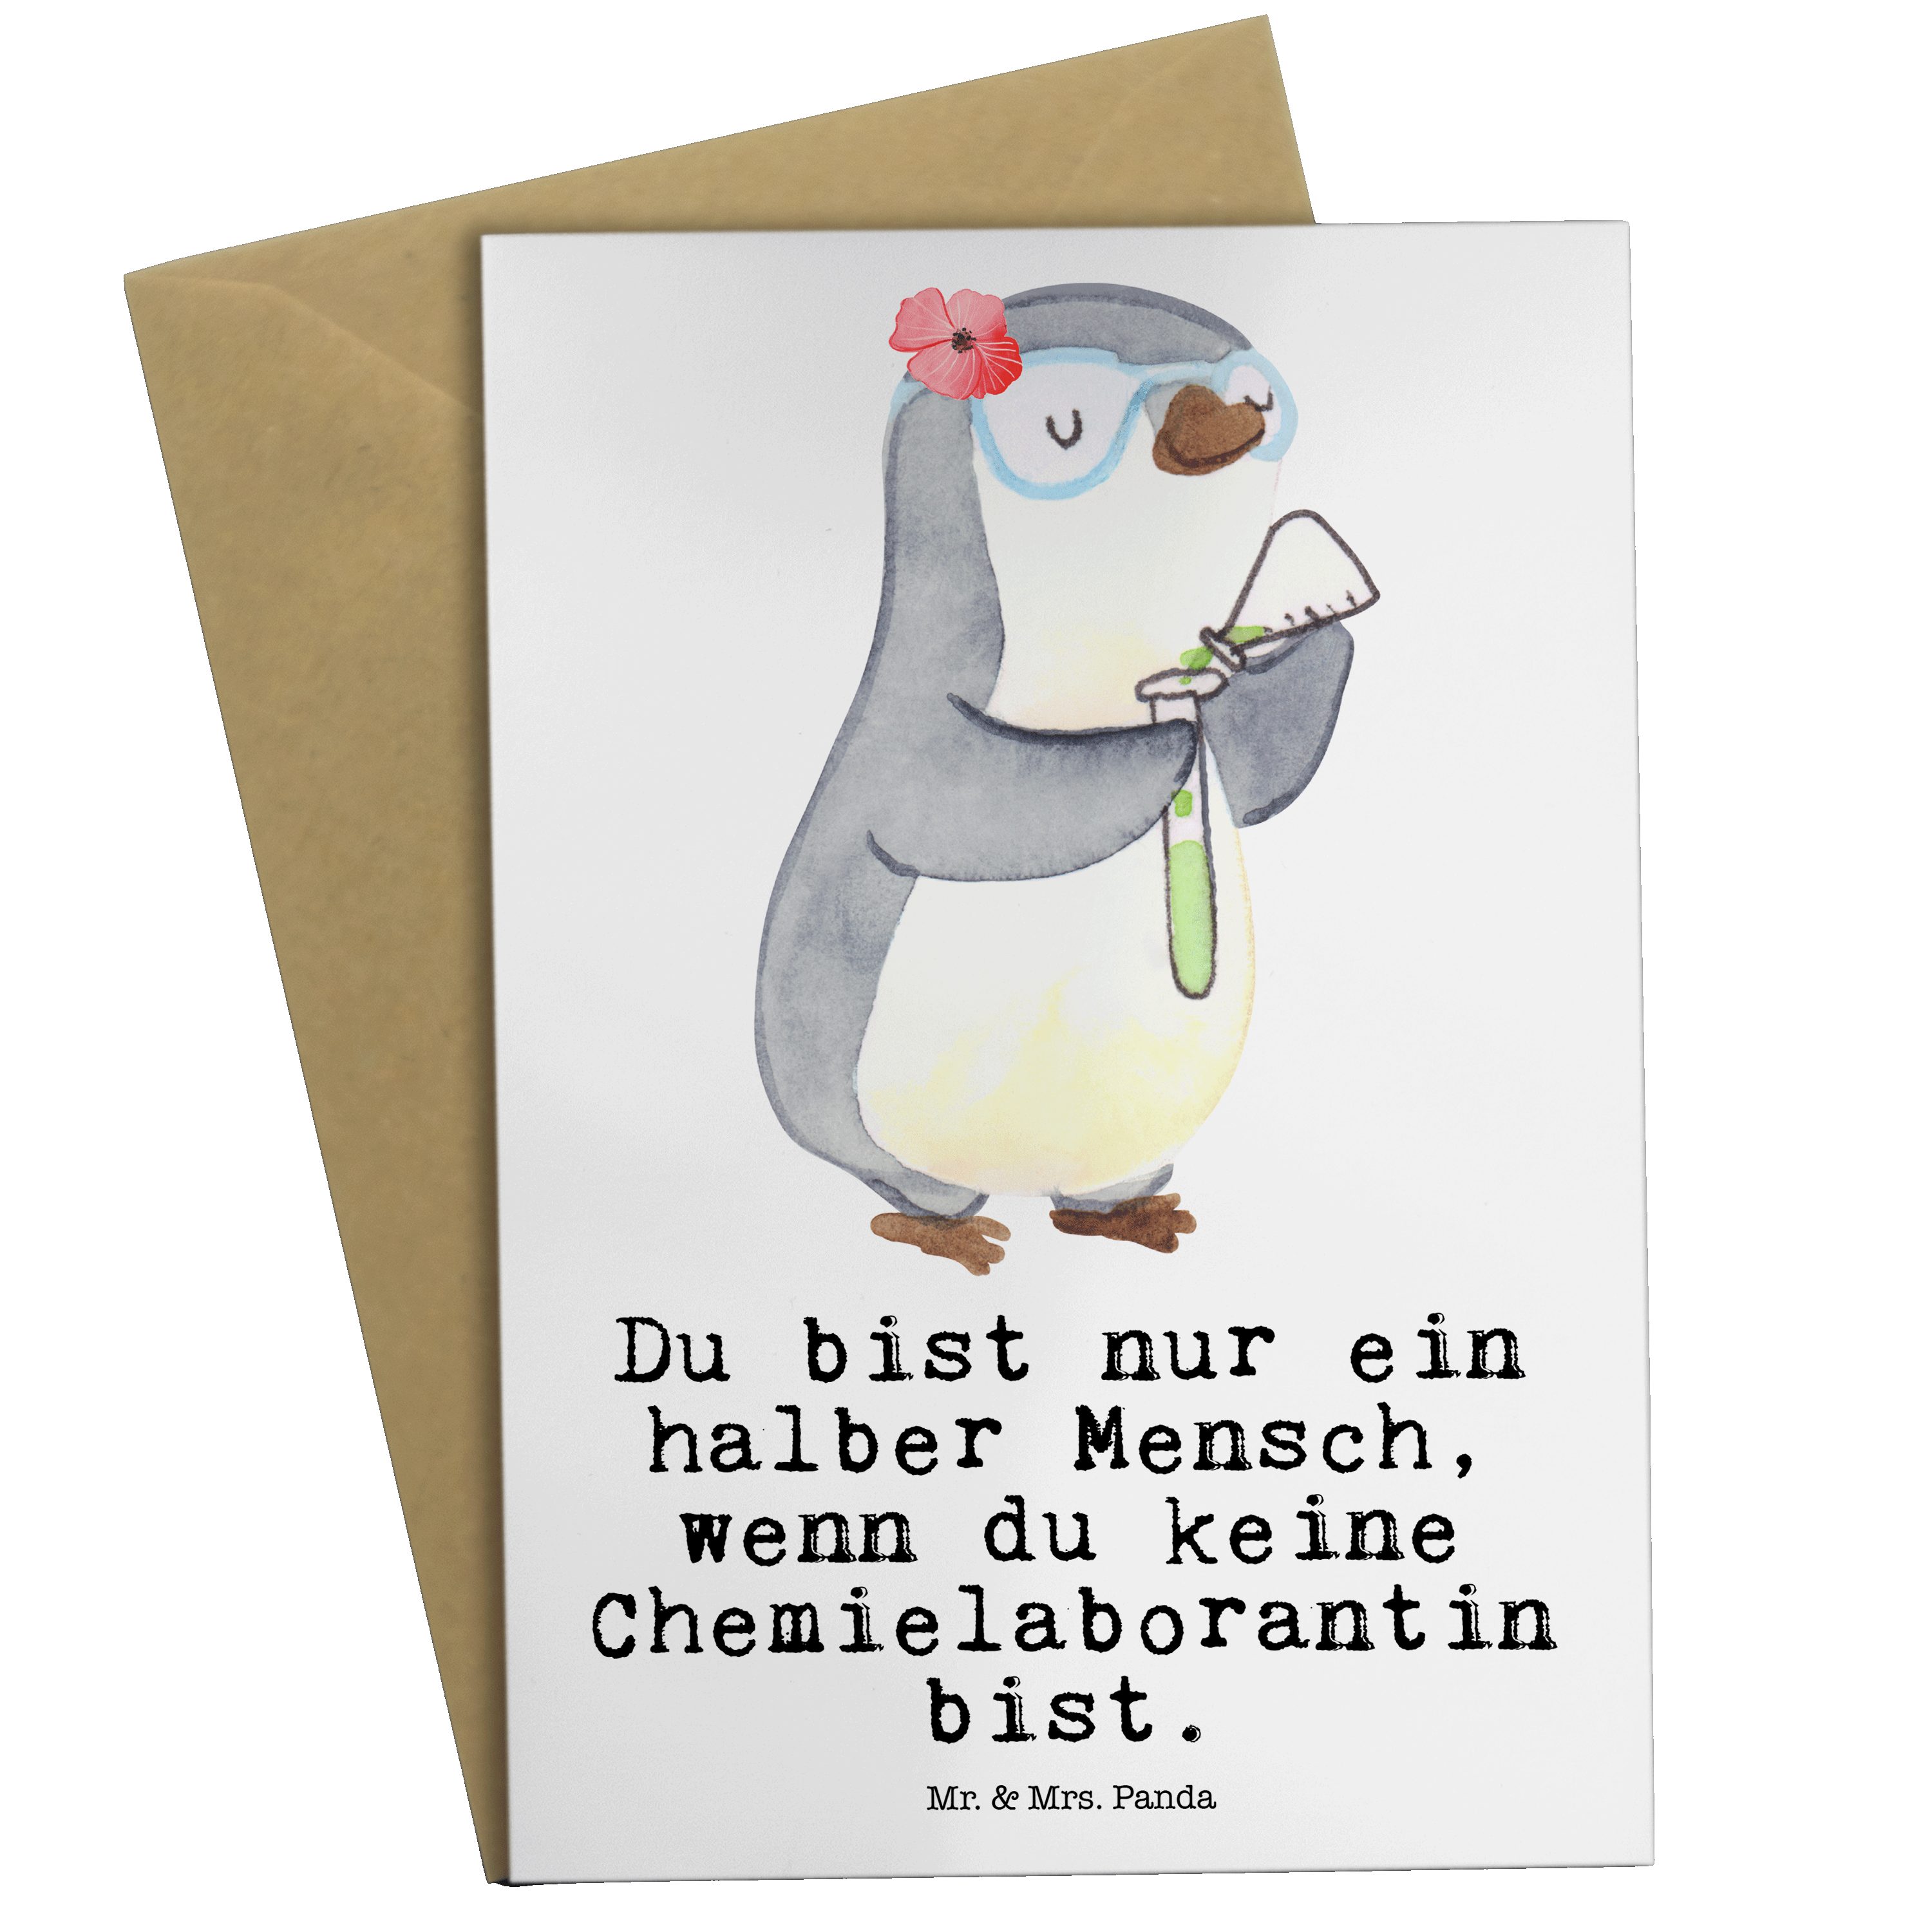 Mr. & Mrs. Panda Grußkarte Chemielaborantin mit Herz - Weiß - Geschenk, Naturwissenschaftlerin